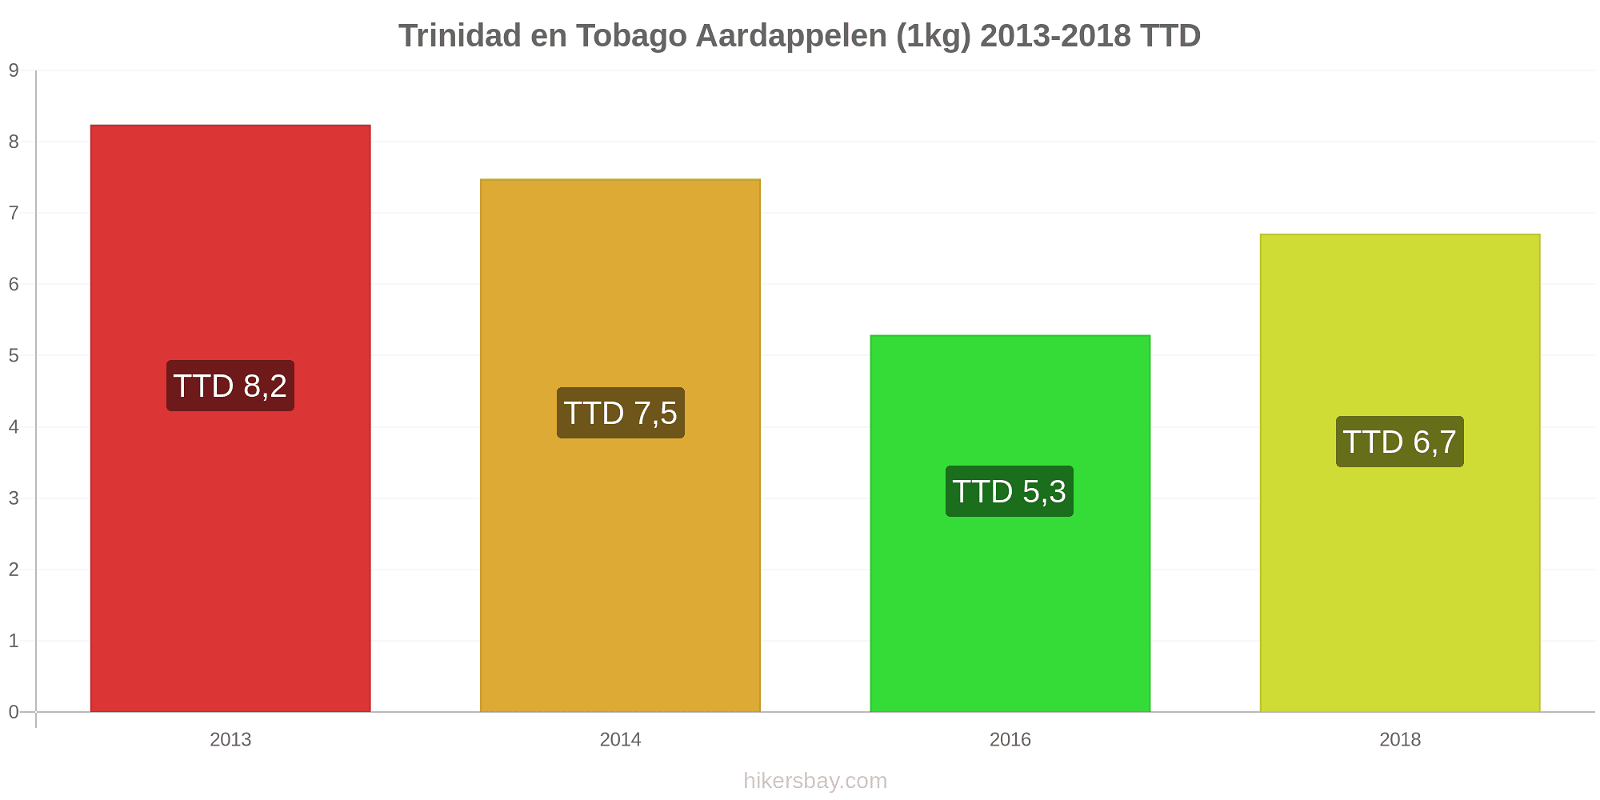 Trinidad en Tobago prijswijzigingen Aardappelen (1kg) hikersbay.com